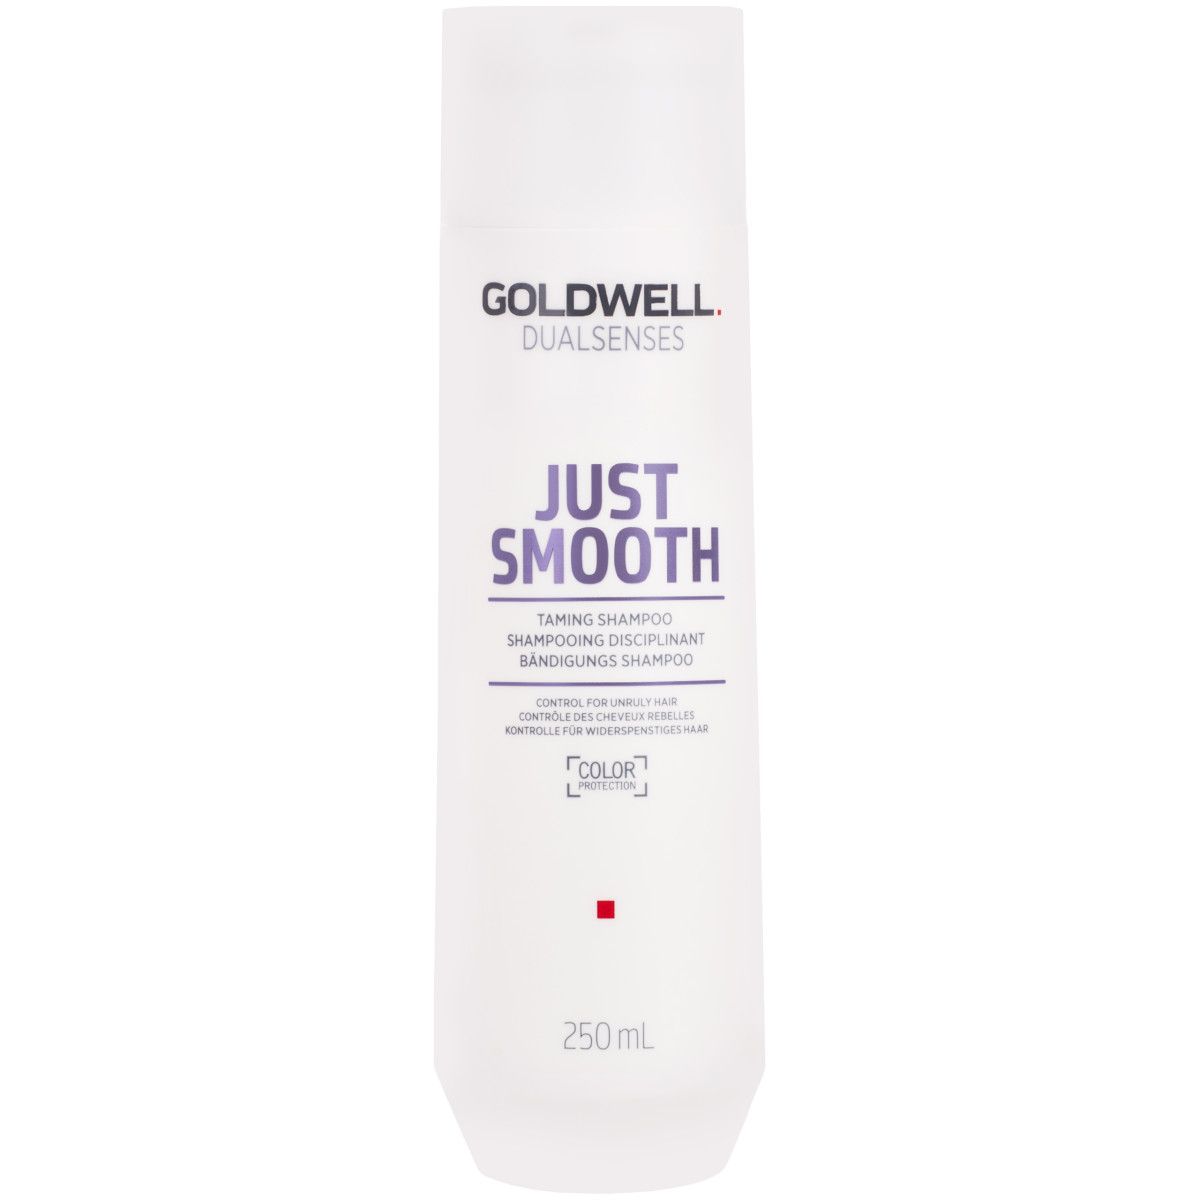 Goldwell Just Smooth, szampon wygładzający włosy, zapobiega puszeniu 250ml